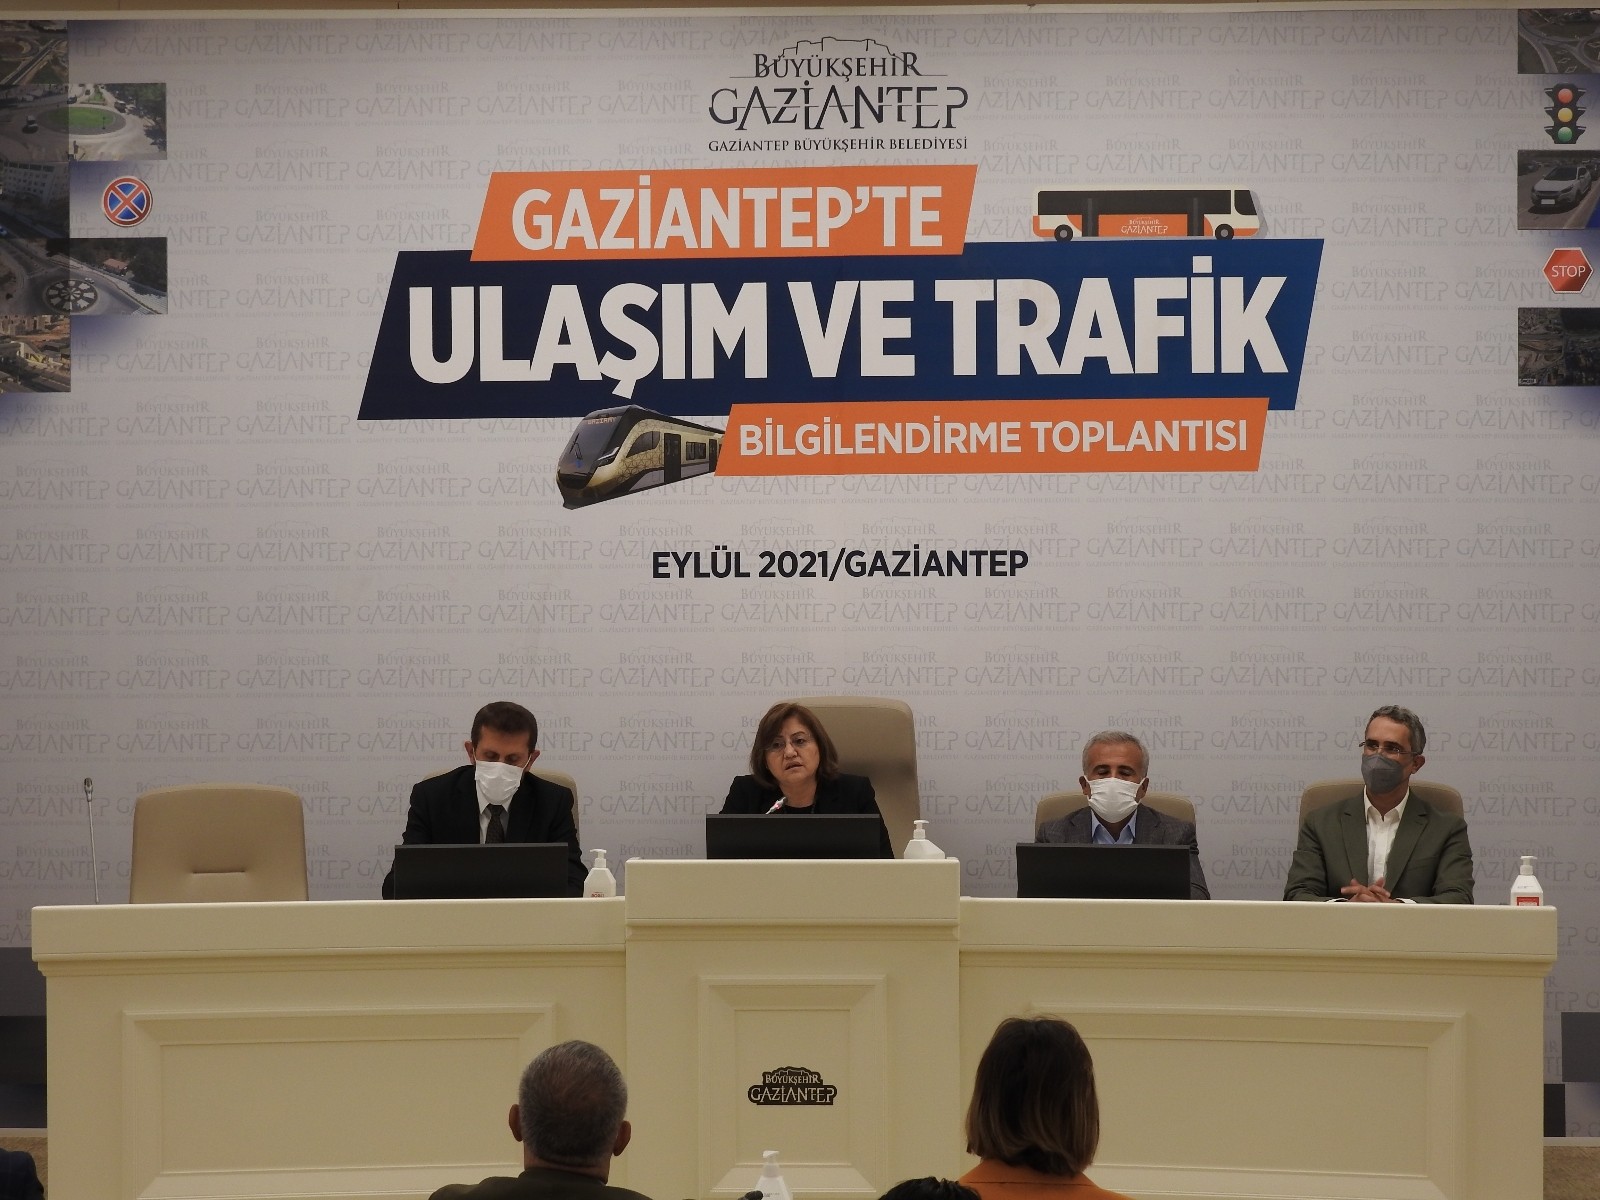 Gaziantep’te ulaşım ve trafik bilgilendirme toplantısı yapıldı